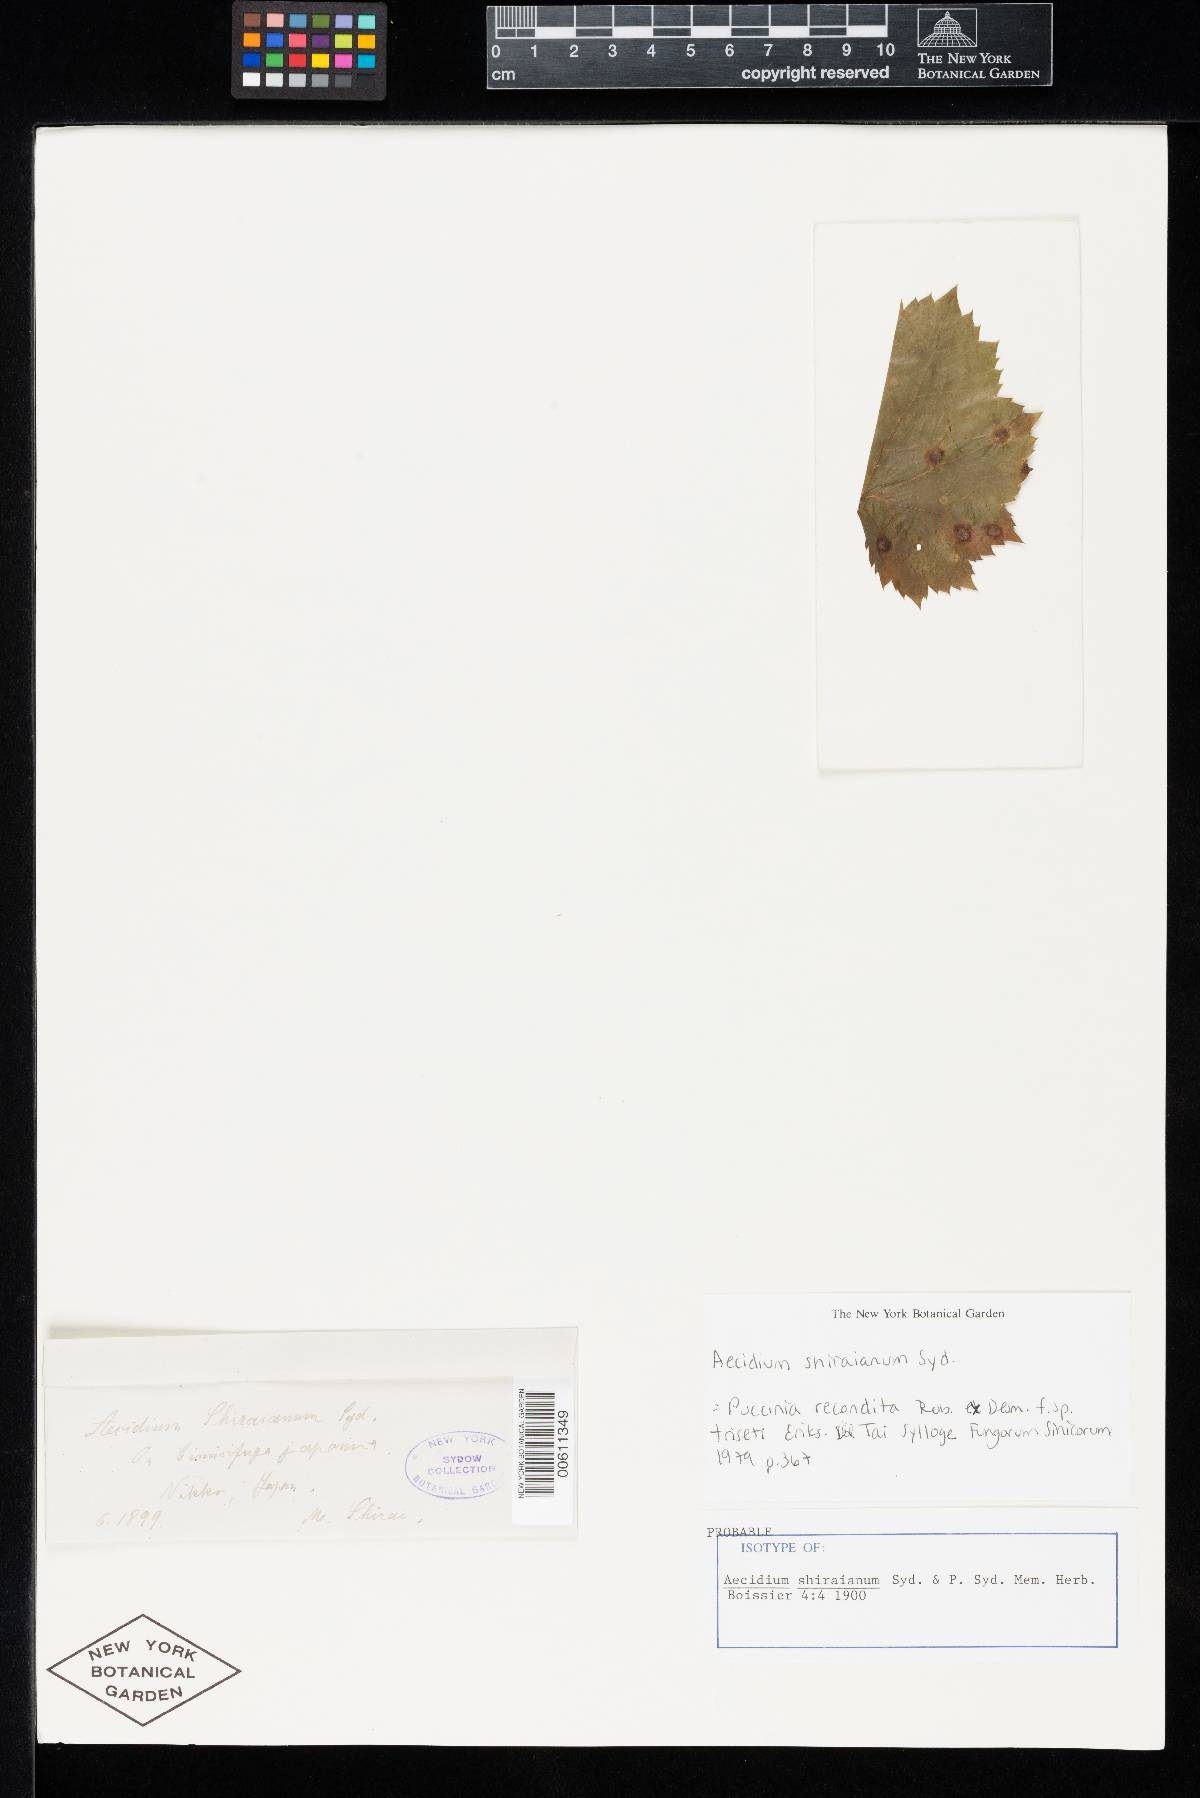 Aecidium shiraianum image